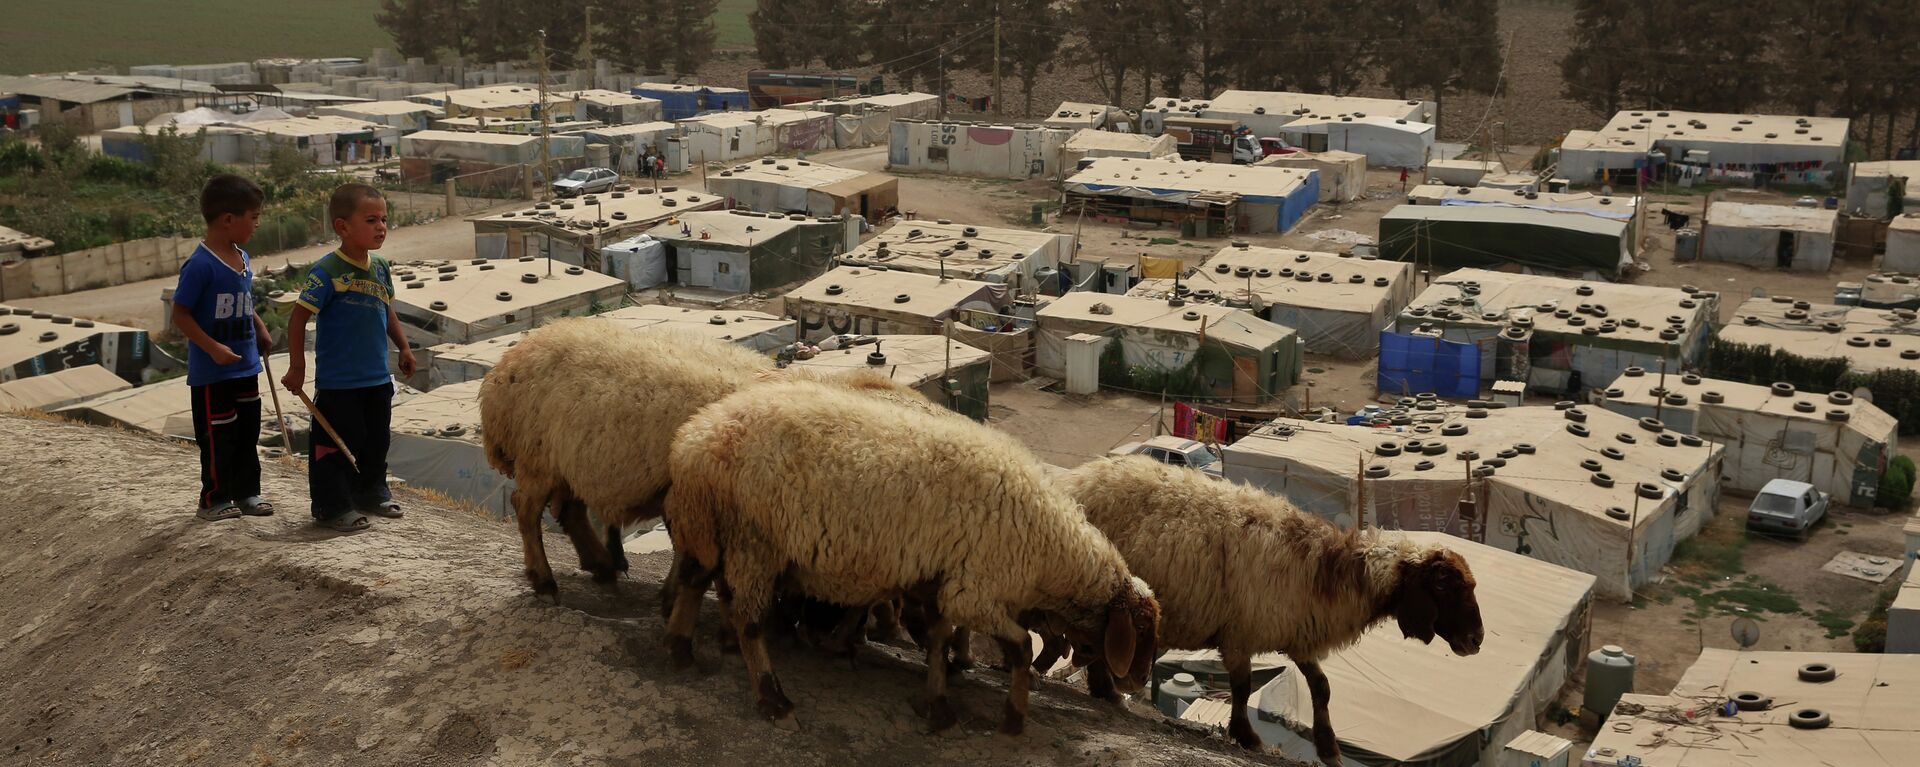 Сирийские мальчики пасут овец около сирийского лагеря беженцев в городе Дейр-Занун, долине Бекаа, Ливан.  - Sputnik Тоҷикистон, 1920, 26.05.2021